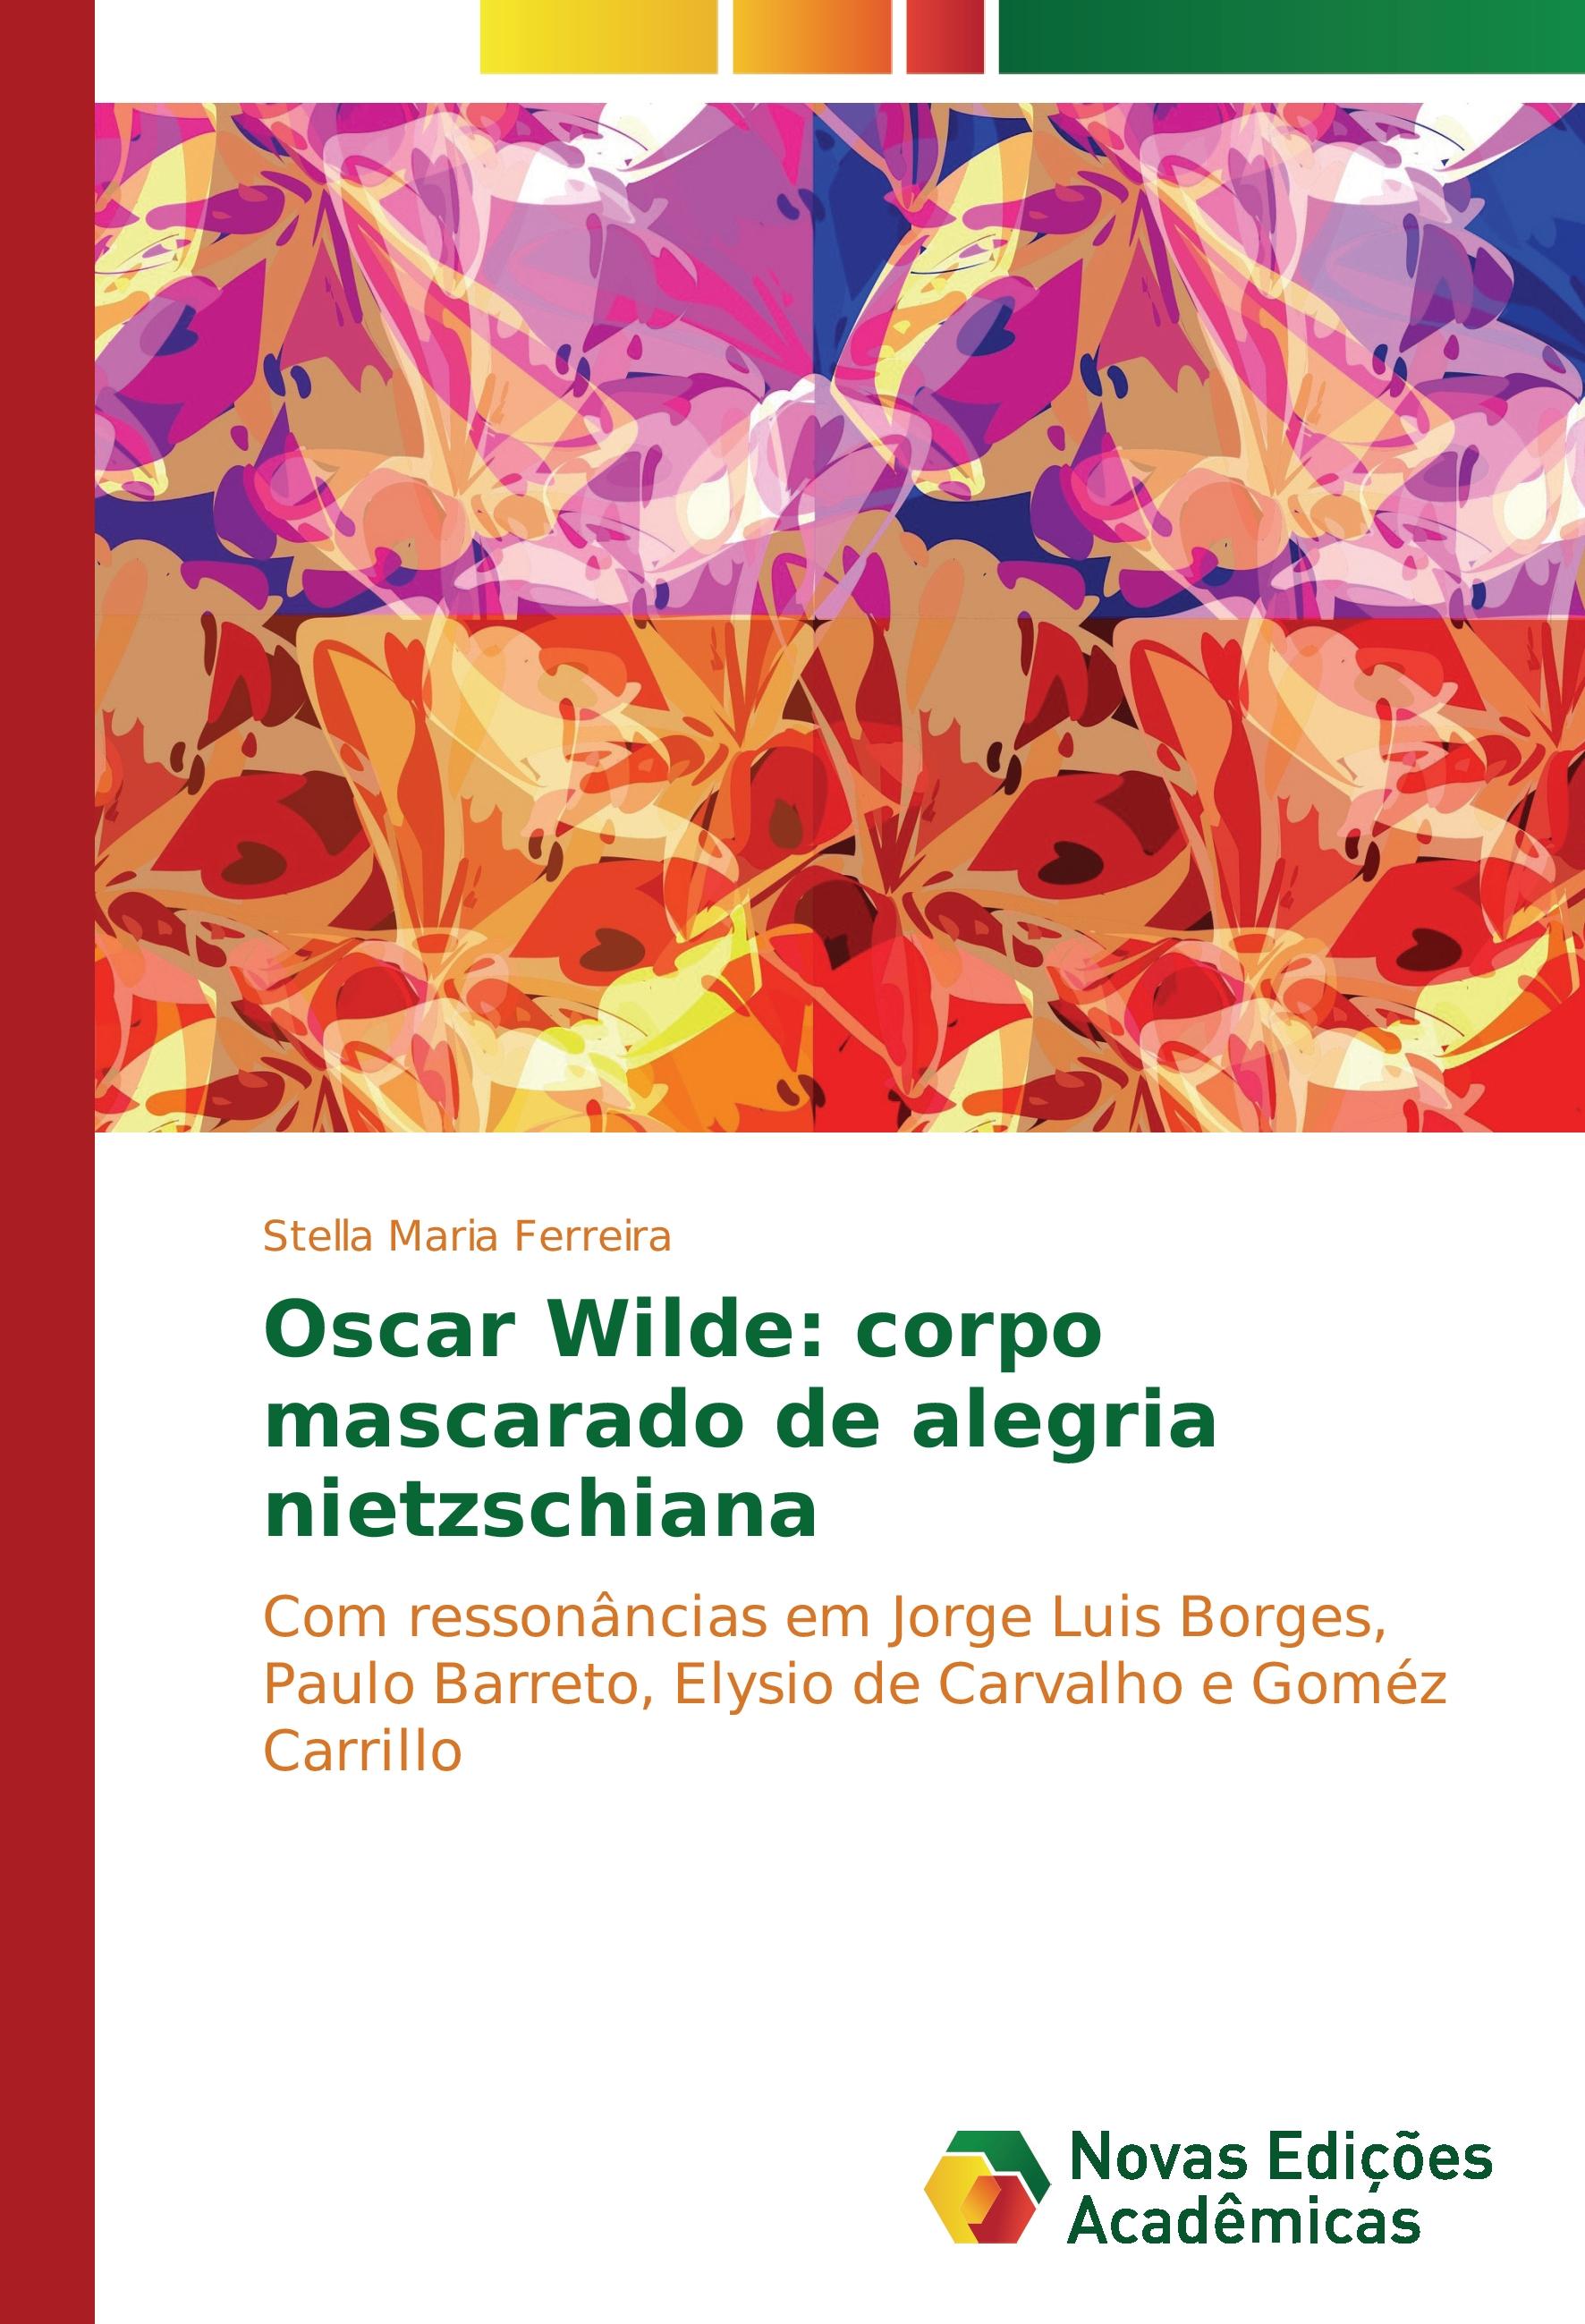 Oscar Wilde: corpo mascarado de alegria nietzschiana - Stella Maria Ferreira